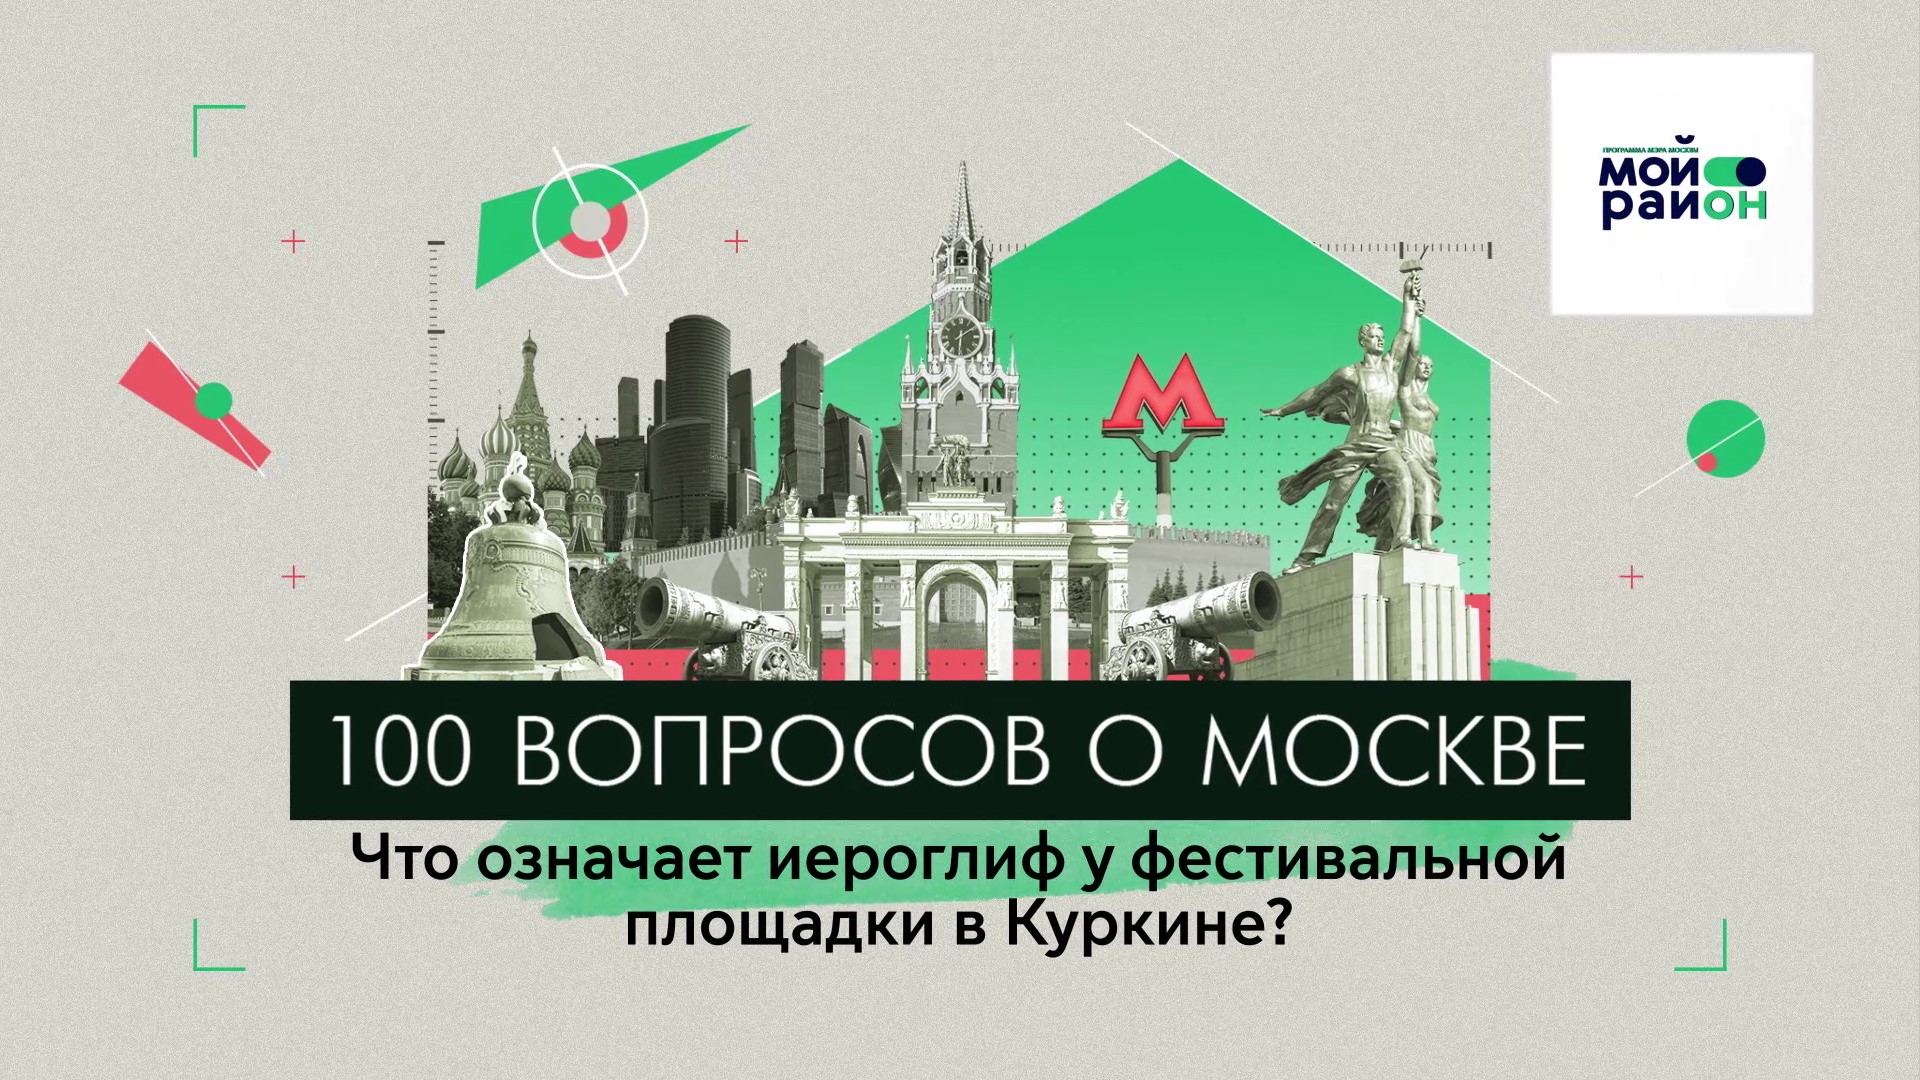 100 вопросов о Москве: Что означает иероглиф у фестивальной площадки в Куркине?